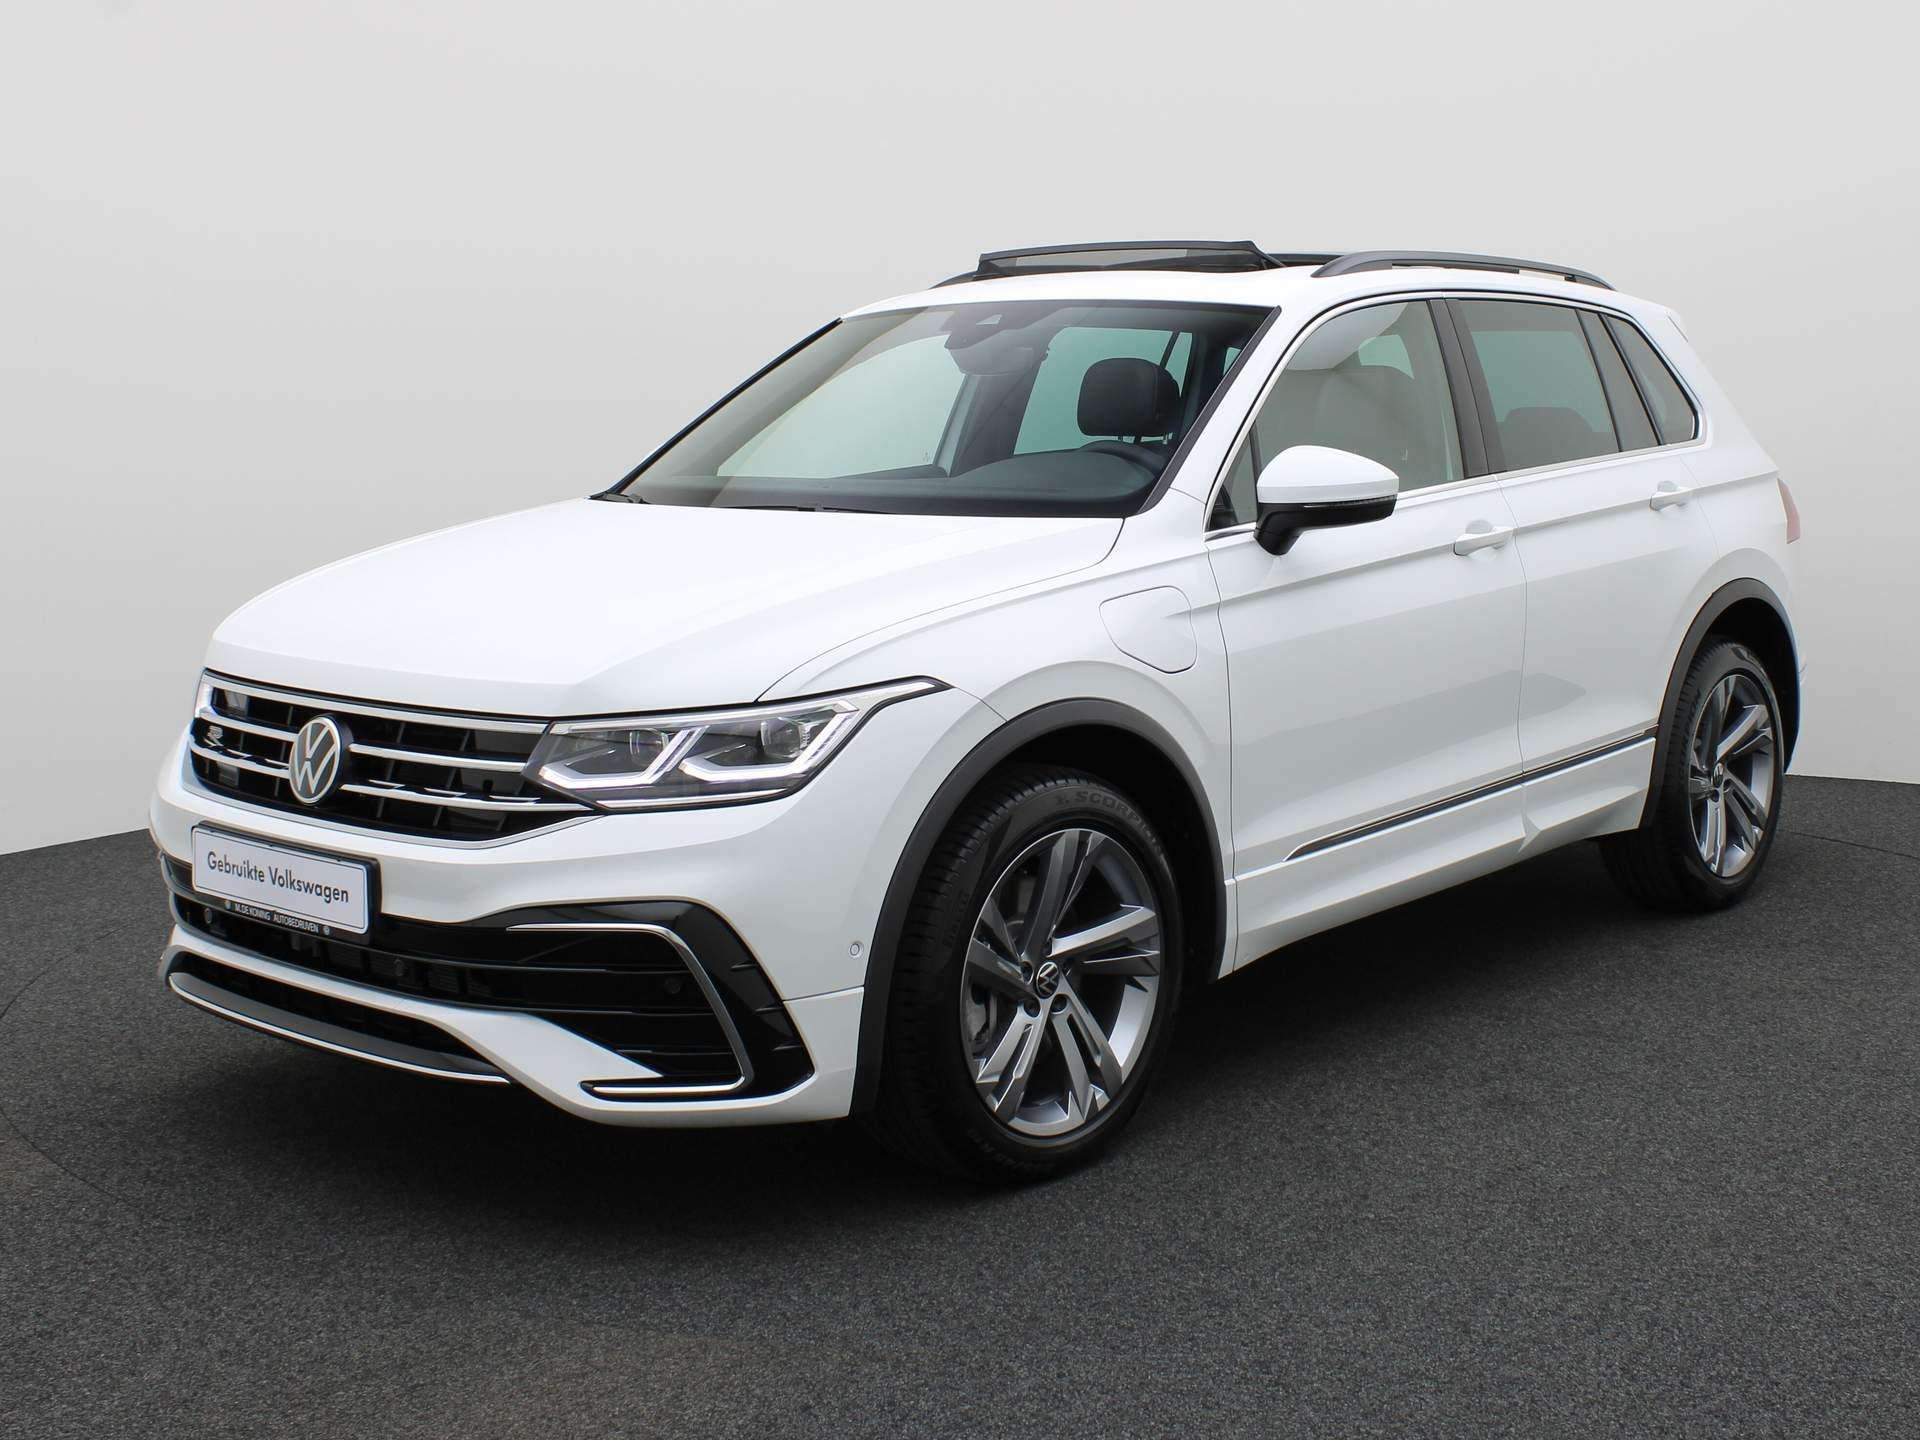 Volkswagen Tiguan Off-Road/Pick-up in White used in CAPELLE AAN DEN IJSSEL for € 53,740.-